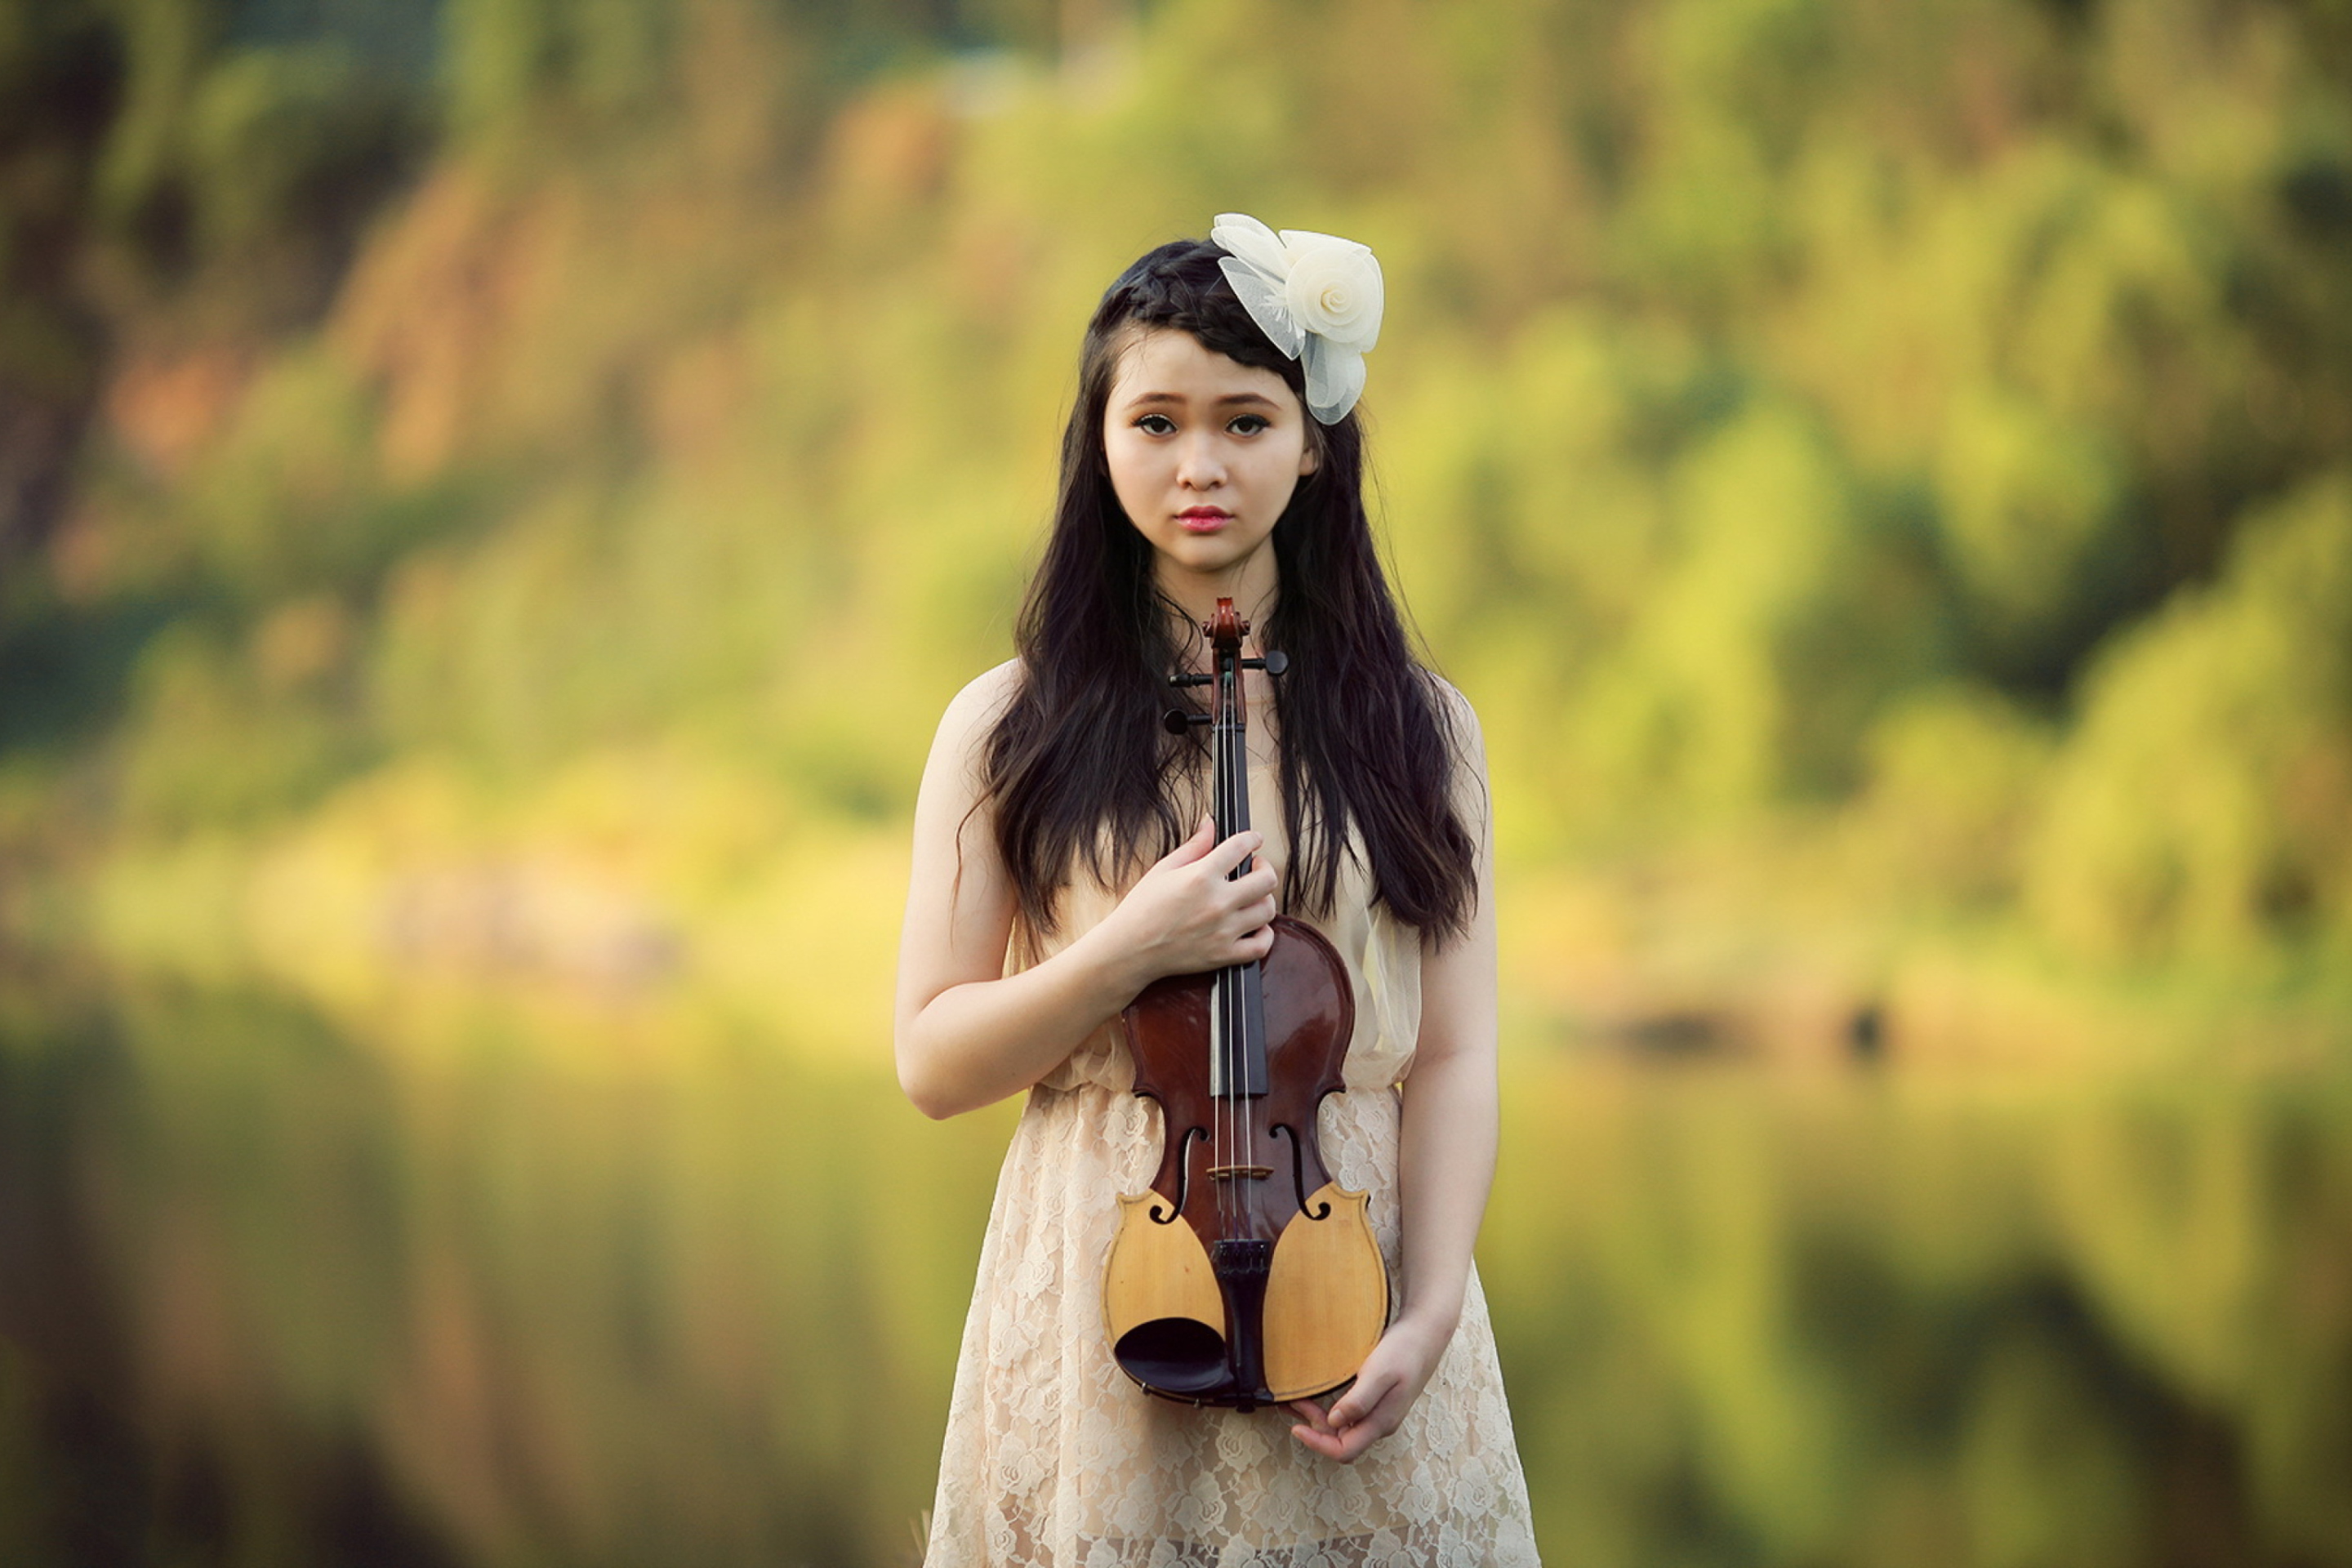 Обои Girl With Violin 2880x1920